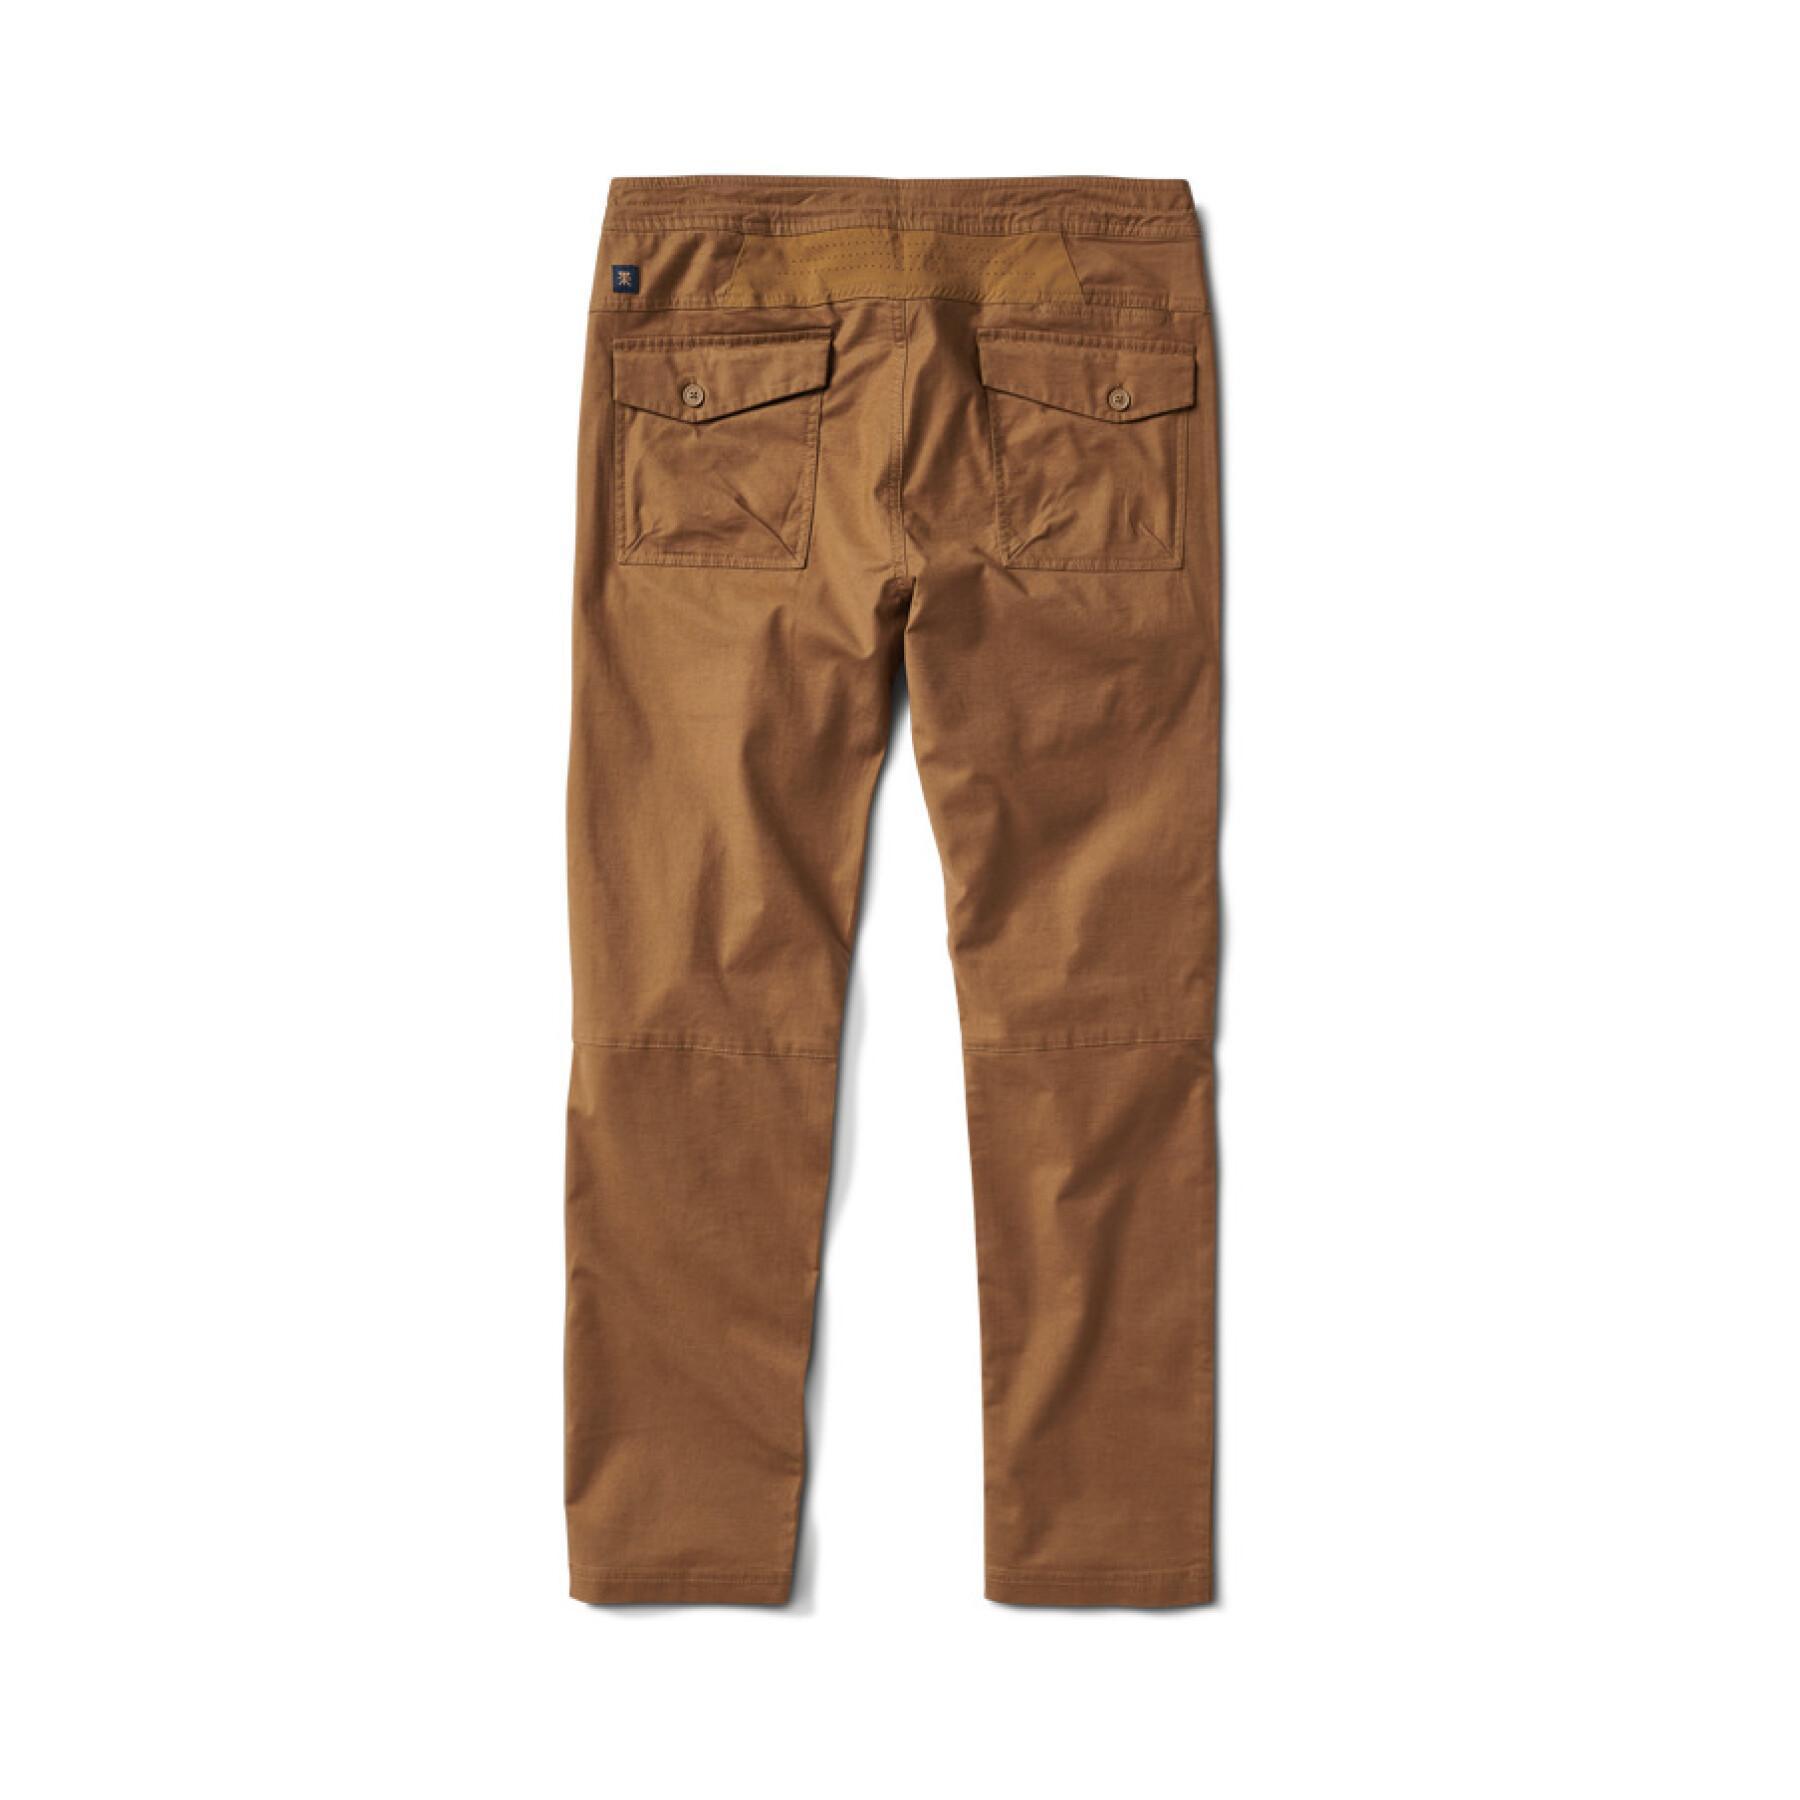 Pantaloni Roark Layover 2.0